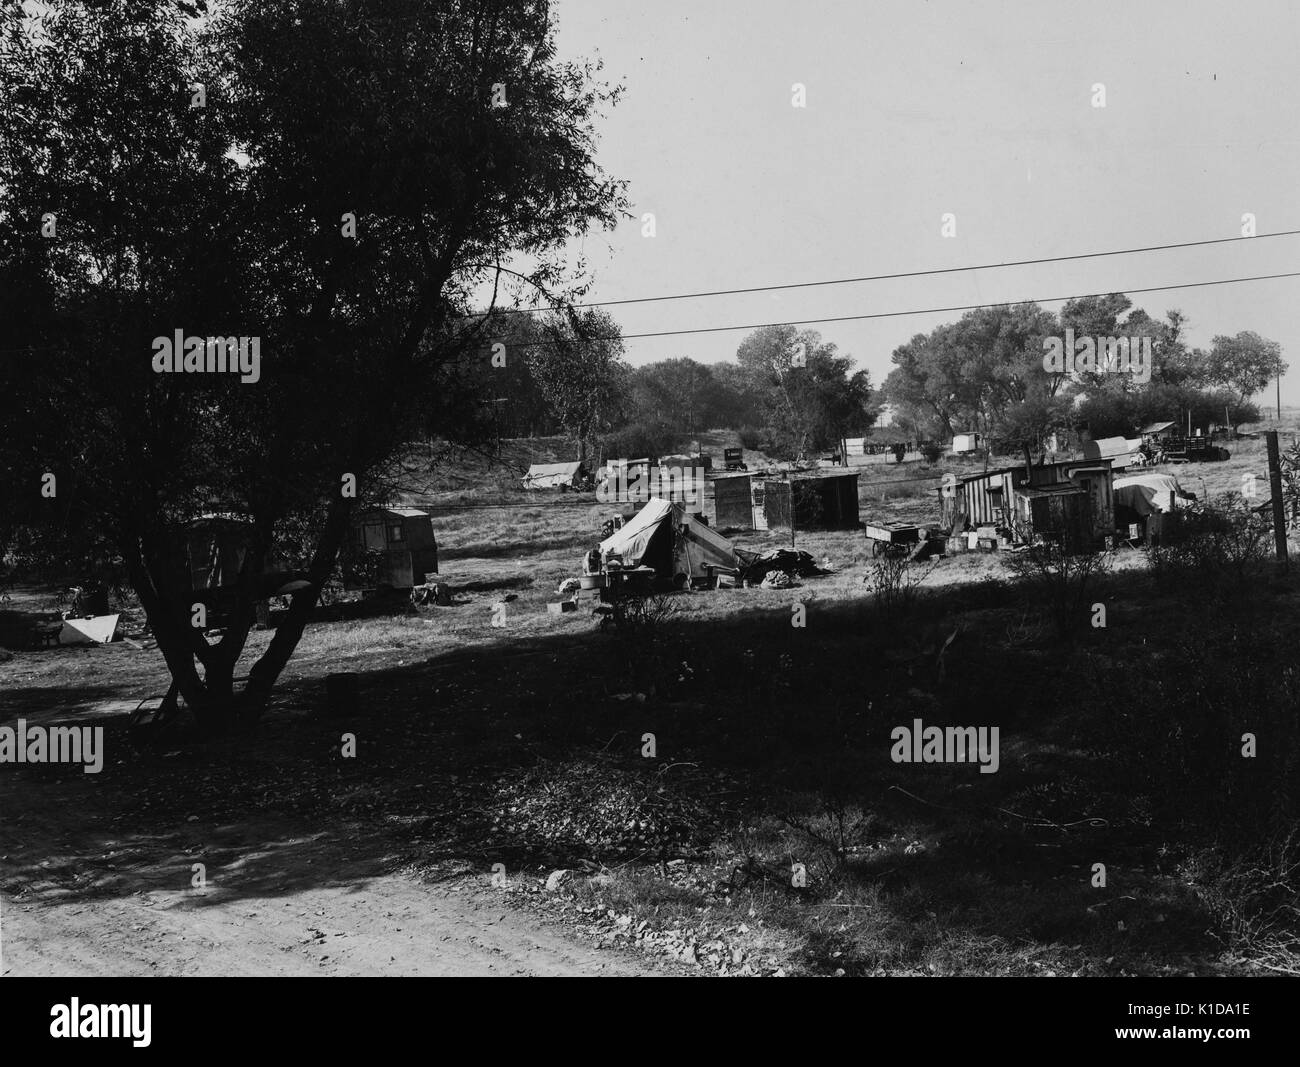 Un camp de migrants à faible densité de population, fait de tentes et de cabanes, dispersés dans un champ à proximité de l'american river, Sacramento, Californie, 1936. à partir de la bibliothèque publique de new york. Banque D'Images